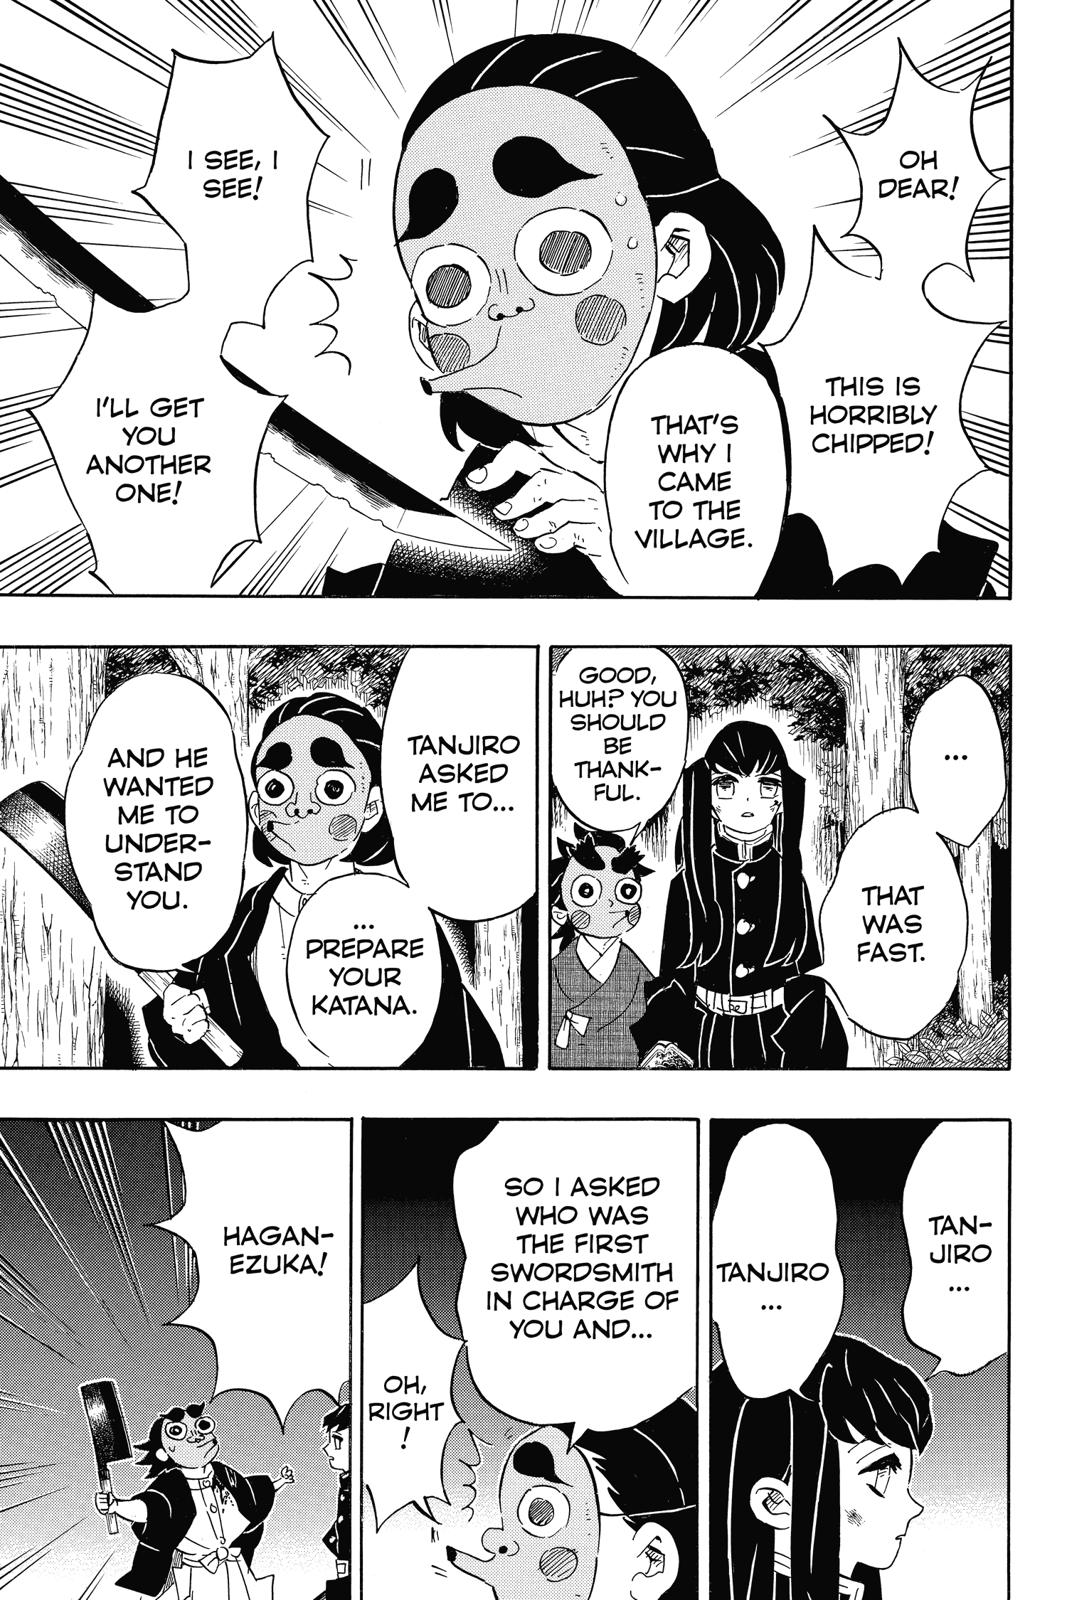 Demon Slayer Manga Manga Chapter - 110 - image 15